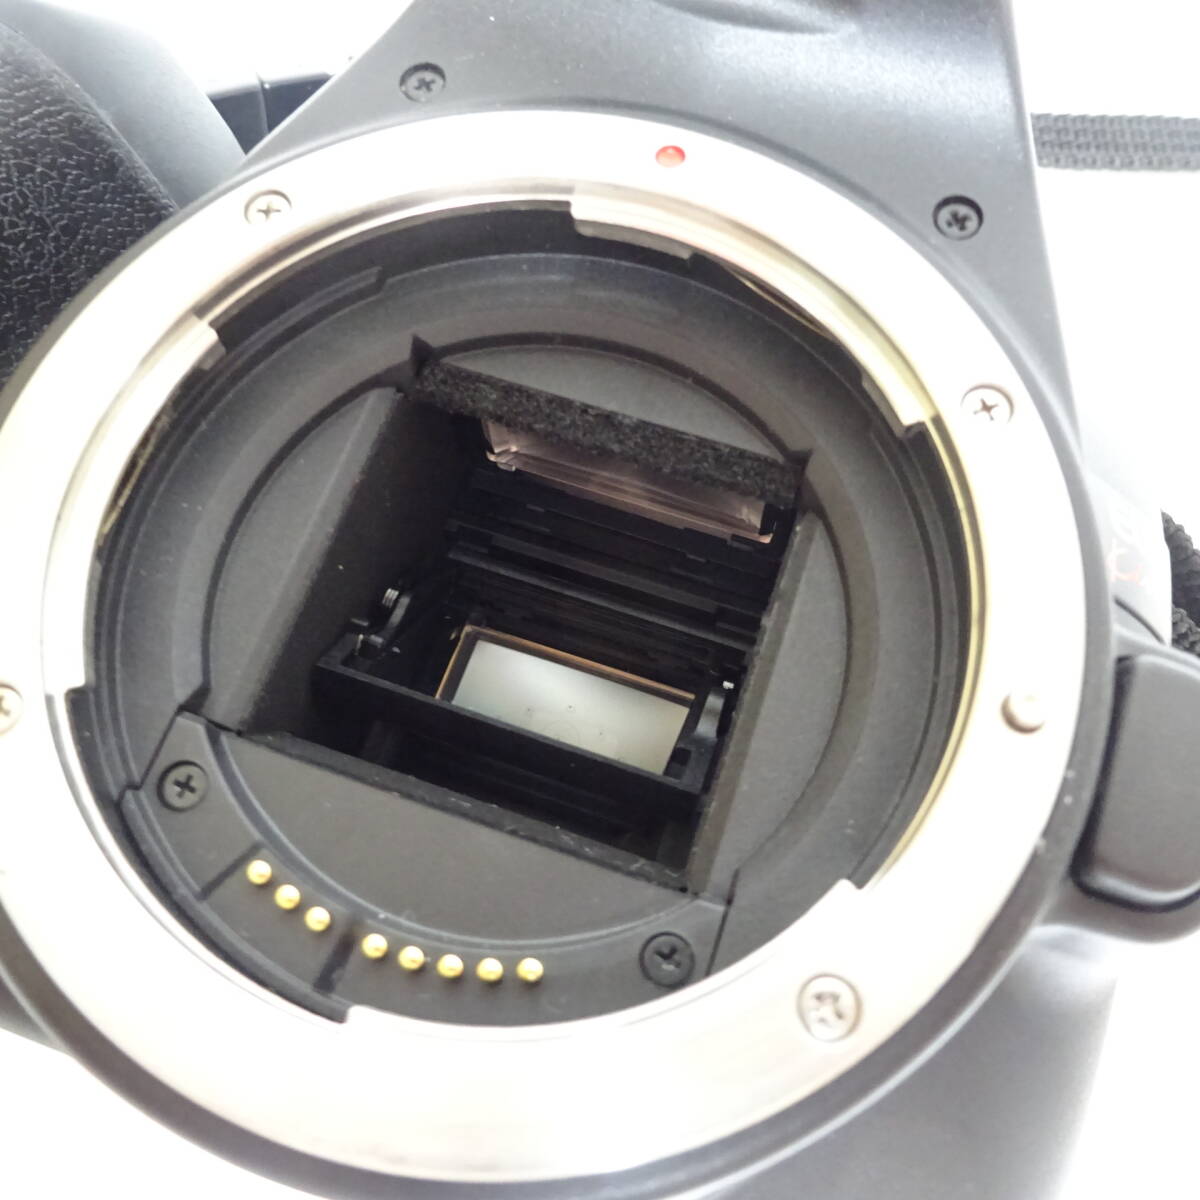 キャノン EOS kiss X10 デジタル一眼カメラ 18-200mm 1:3.5-5.6 レンズ Canon 通電確認済 80サイズ発送 KK-2644776-191-mrrzの画像3